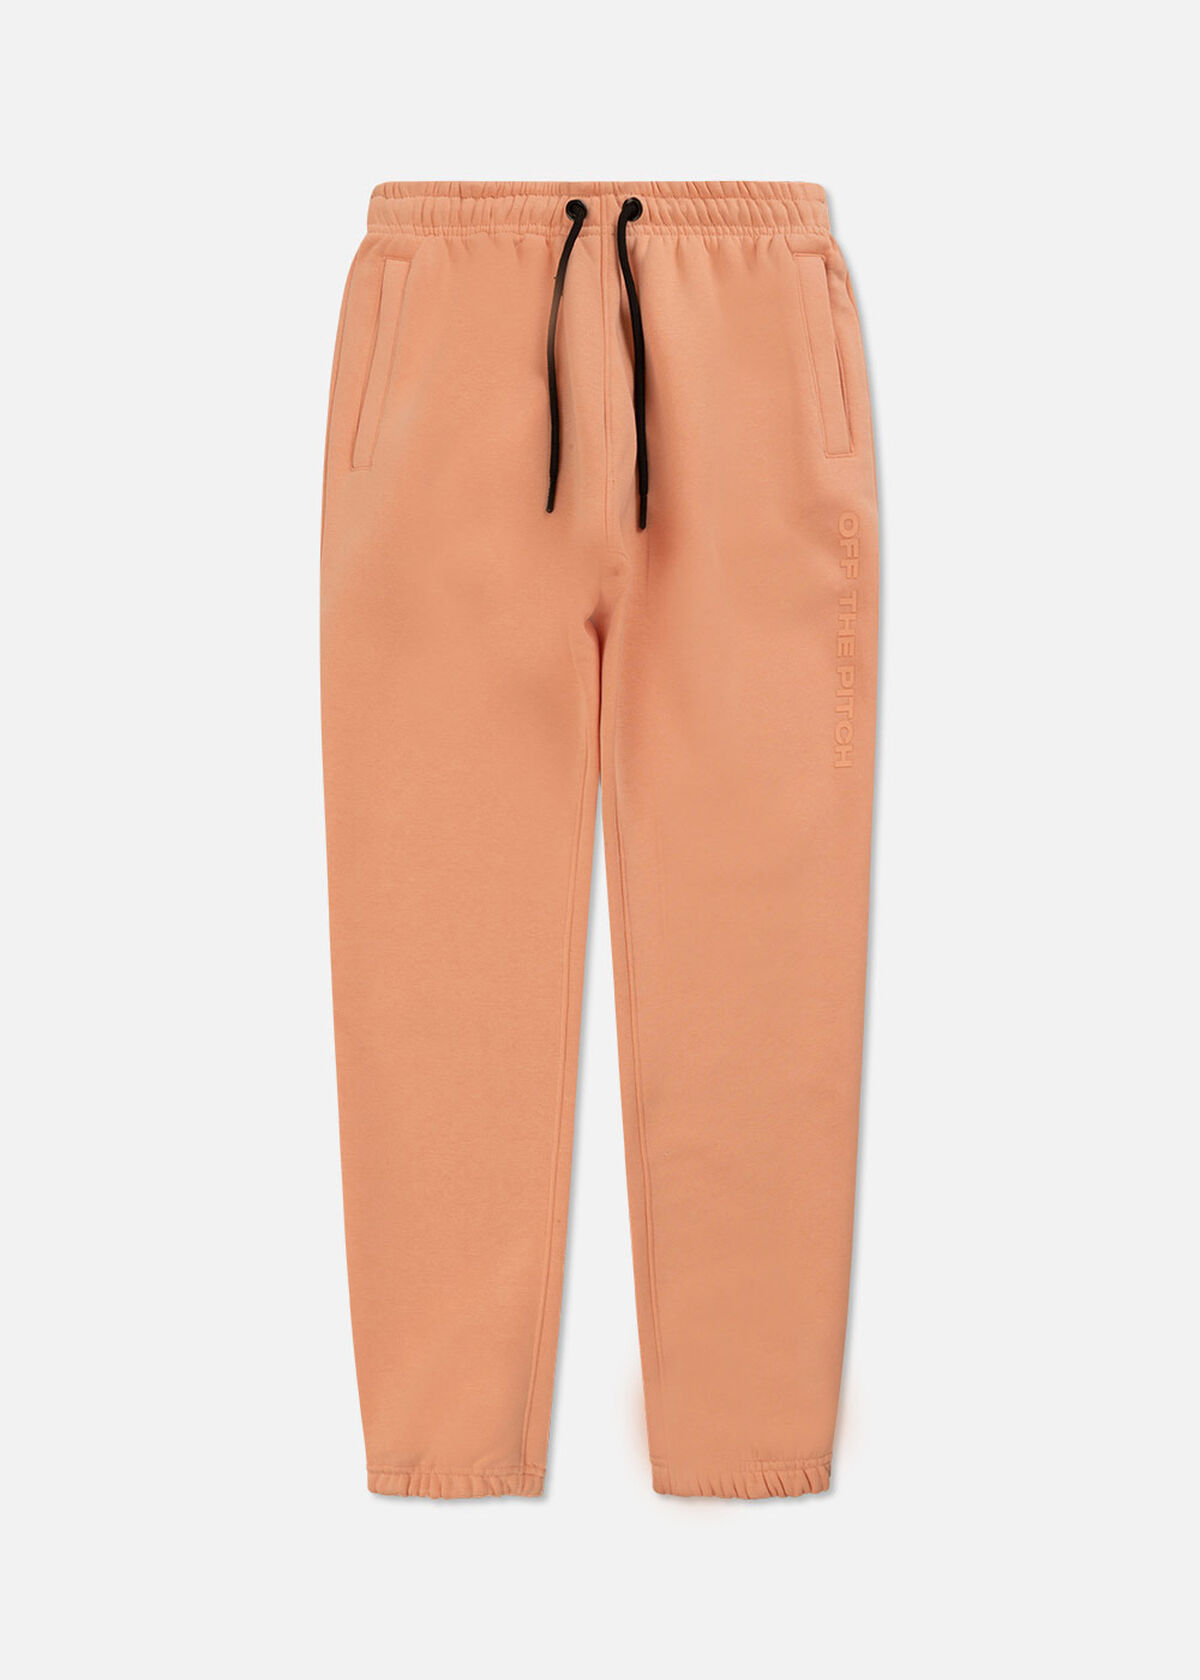 Comfort Pants Women - 100% Cotton, Peach, hi-res